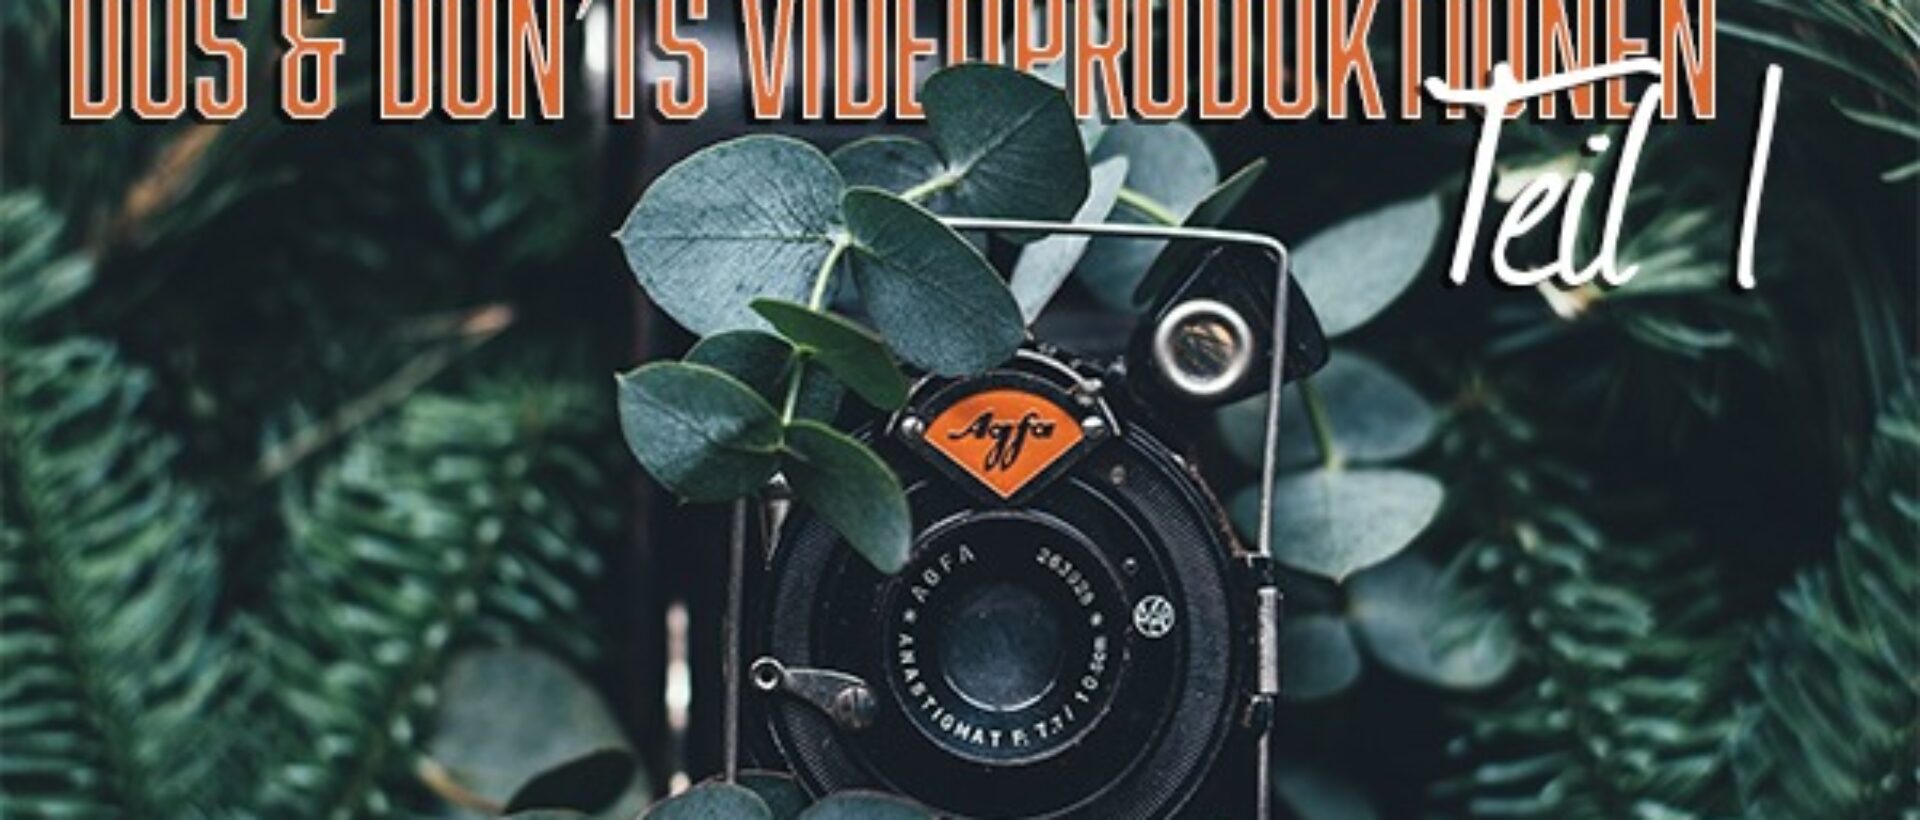 Beitragsbild mit vintage Kamera umgeben von Pflanzen